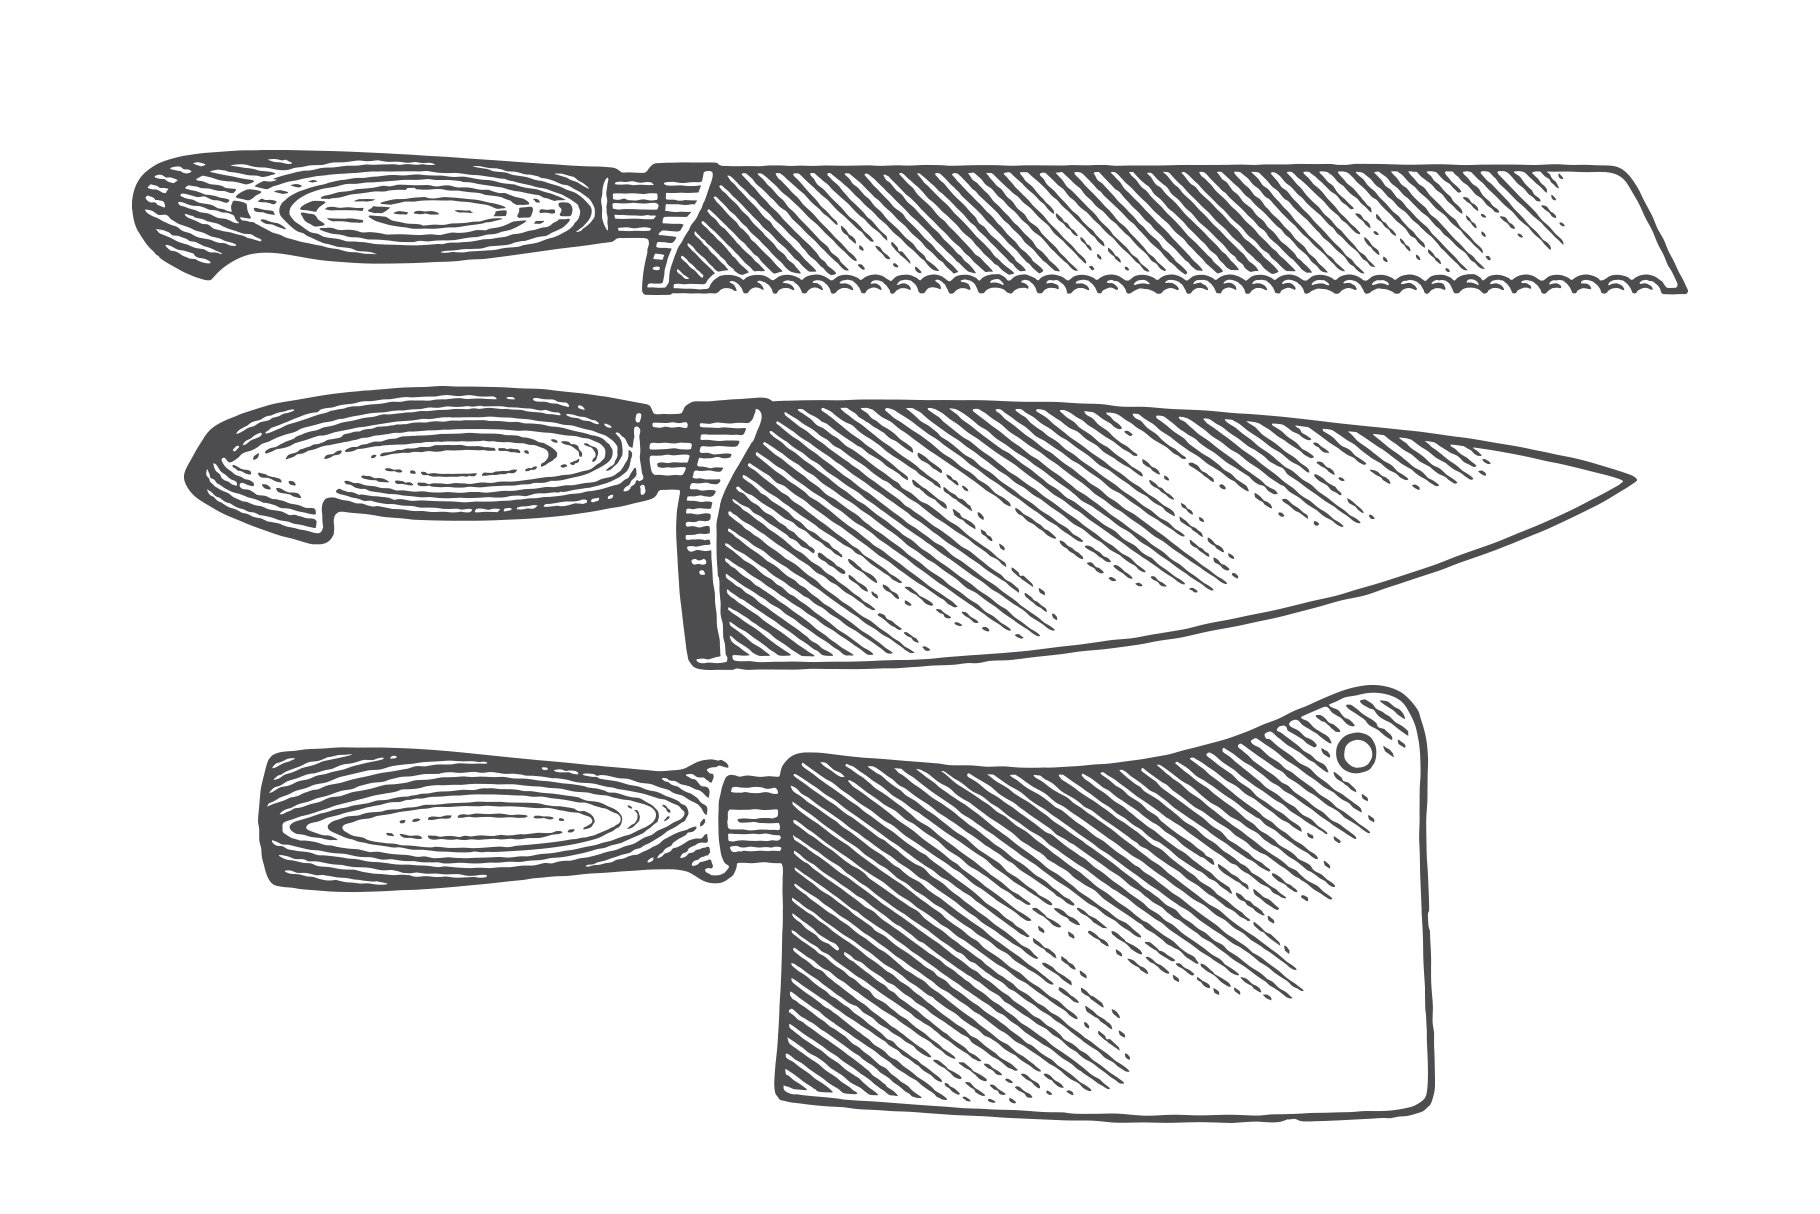 Knife set sketch vector illustration in 2023  Vector illustration,  Illustration, How to draw hands